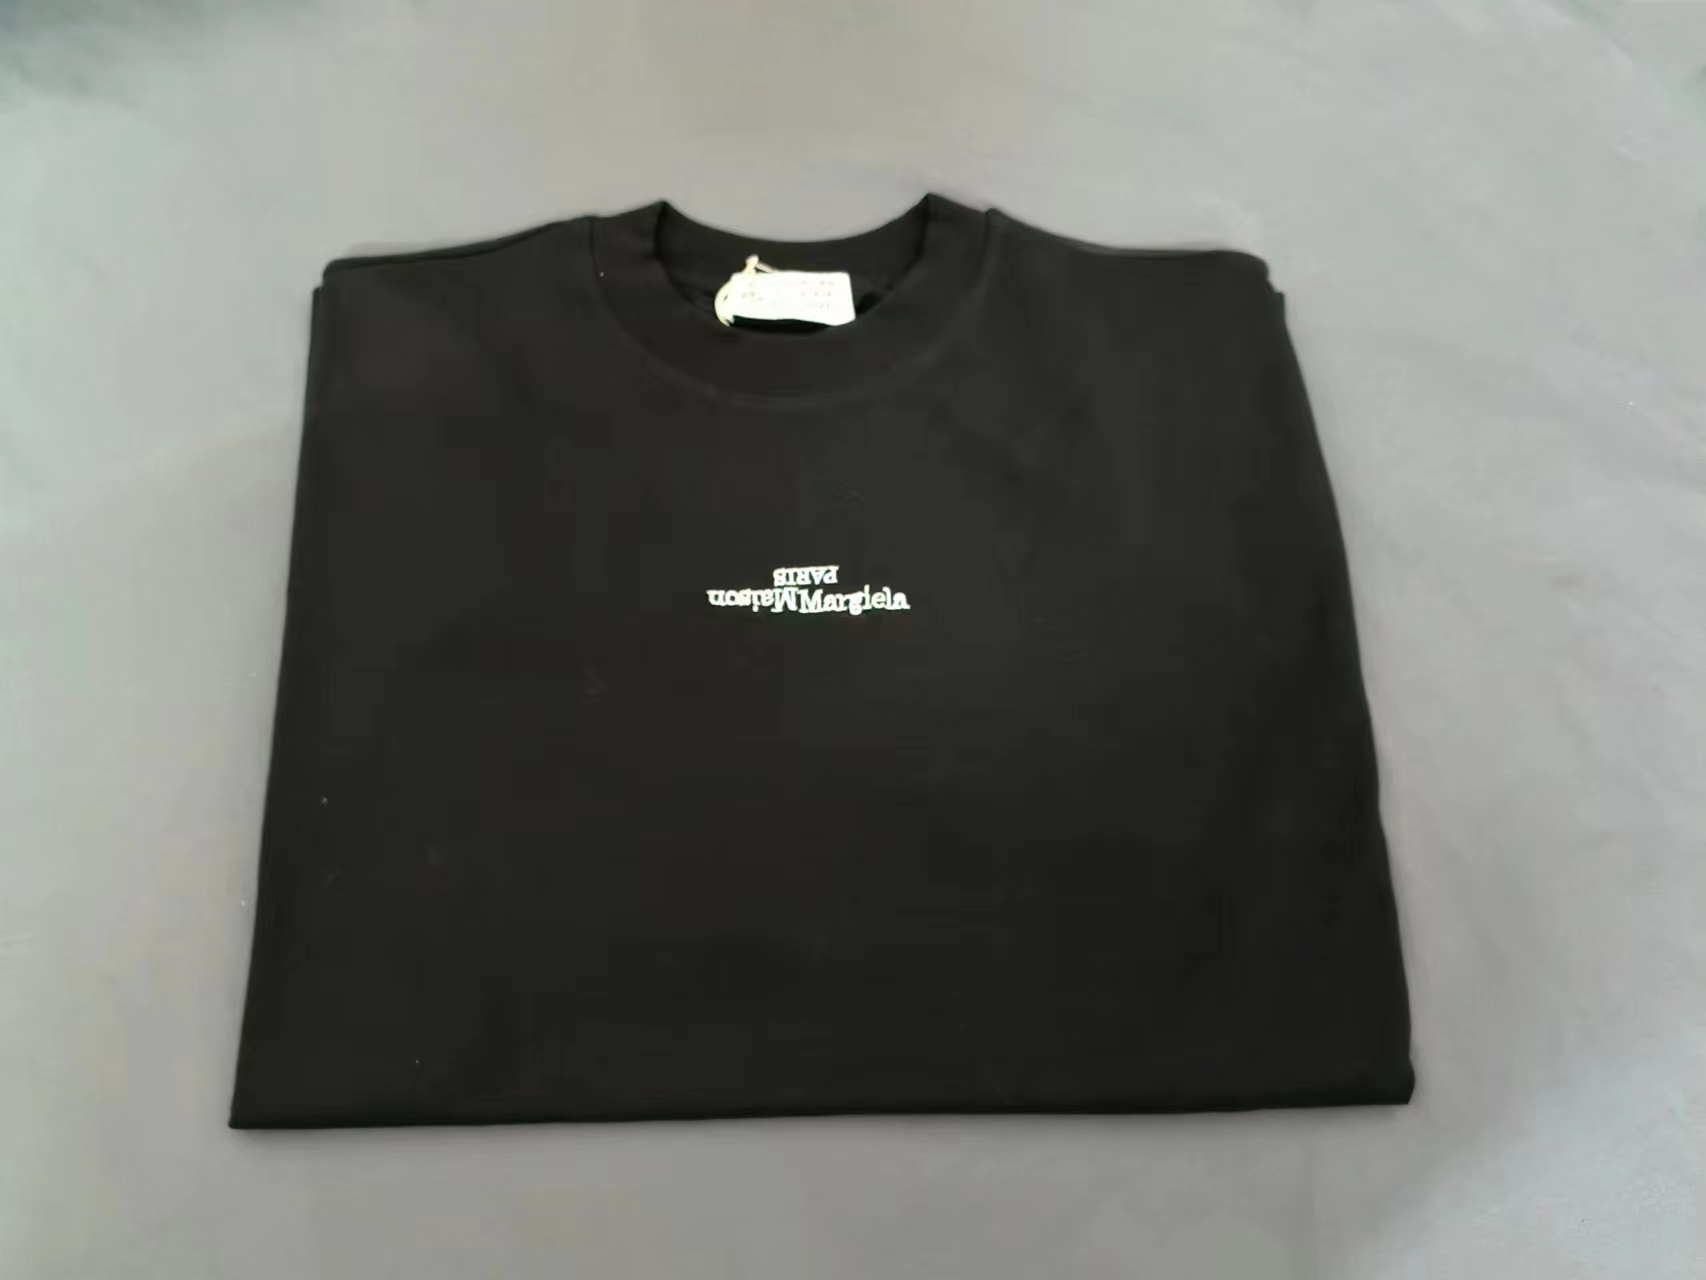 【激安】高級品通販 WE11DONE ウェルダン意味コピー トップス 純綿tシャツ 半袖 シンプル 2色可選_6